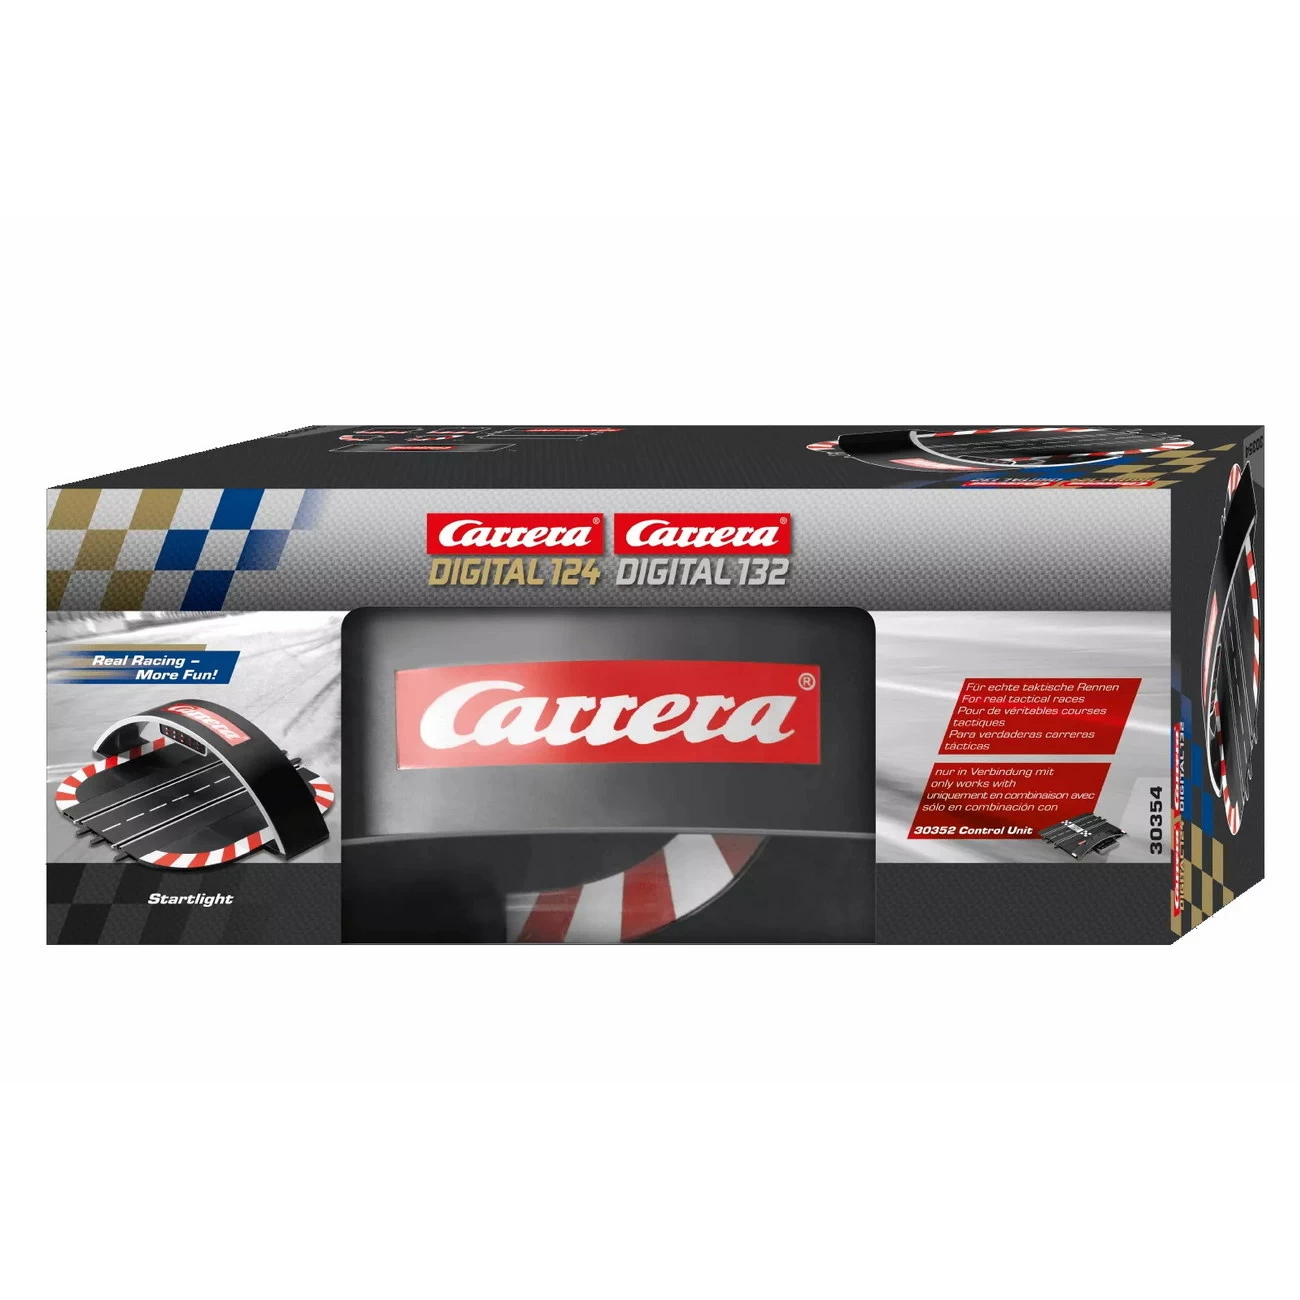 Carrera digital - Startlight (30354)